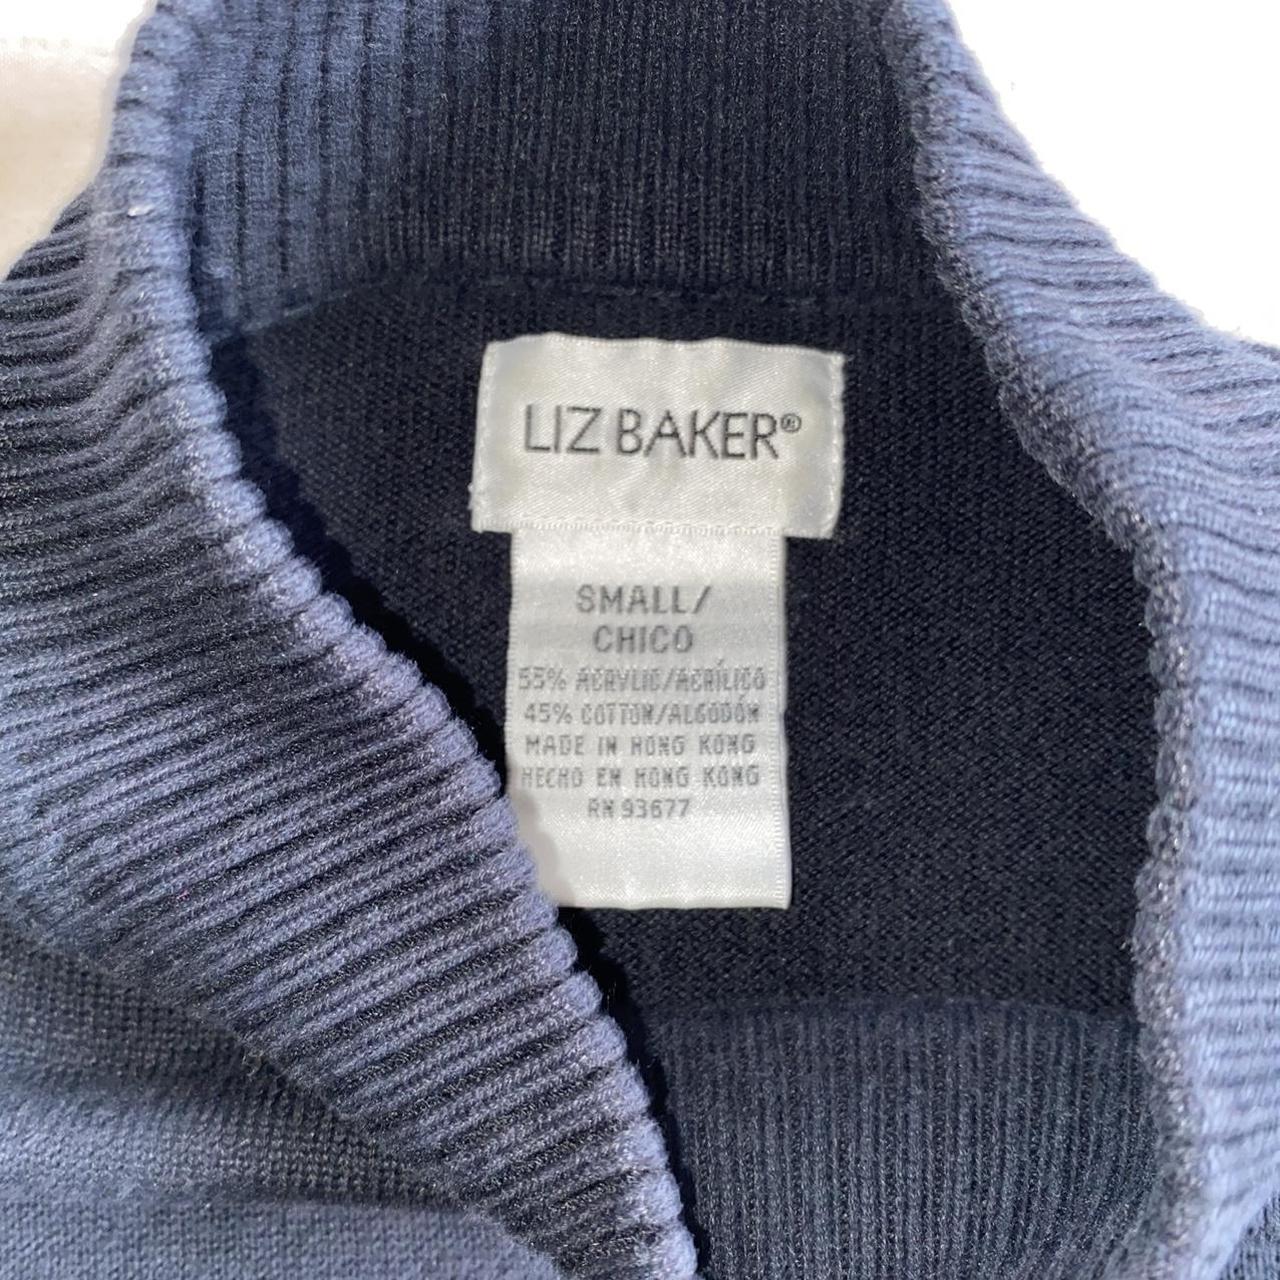 Vintage Liz Baker black mockneck sweater // great... - Depop